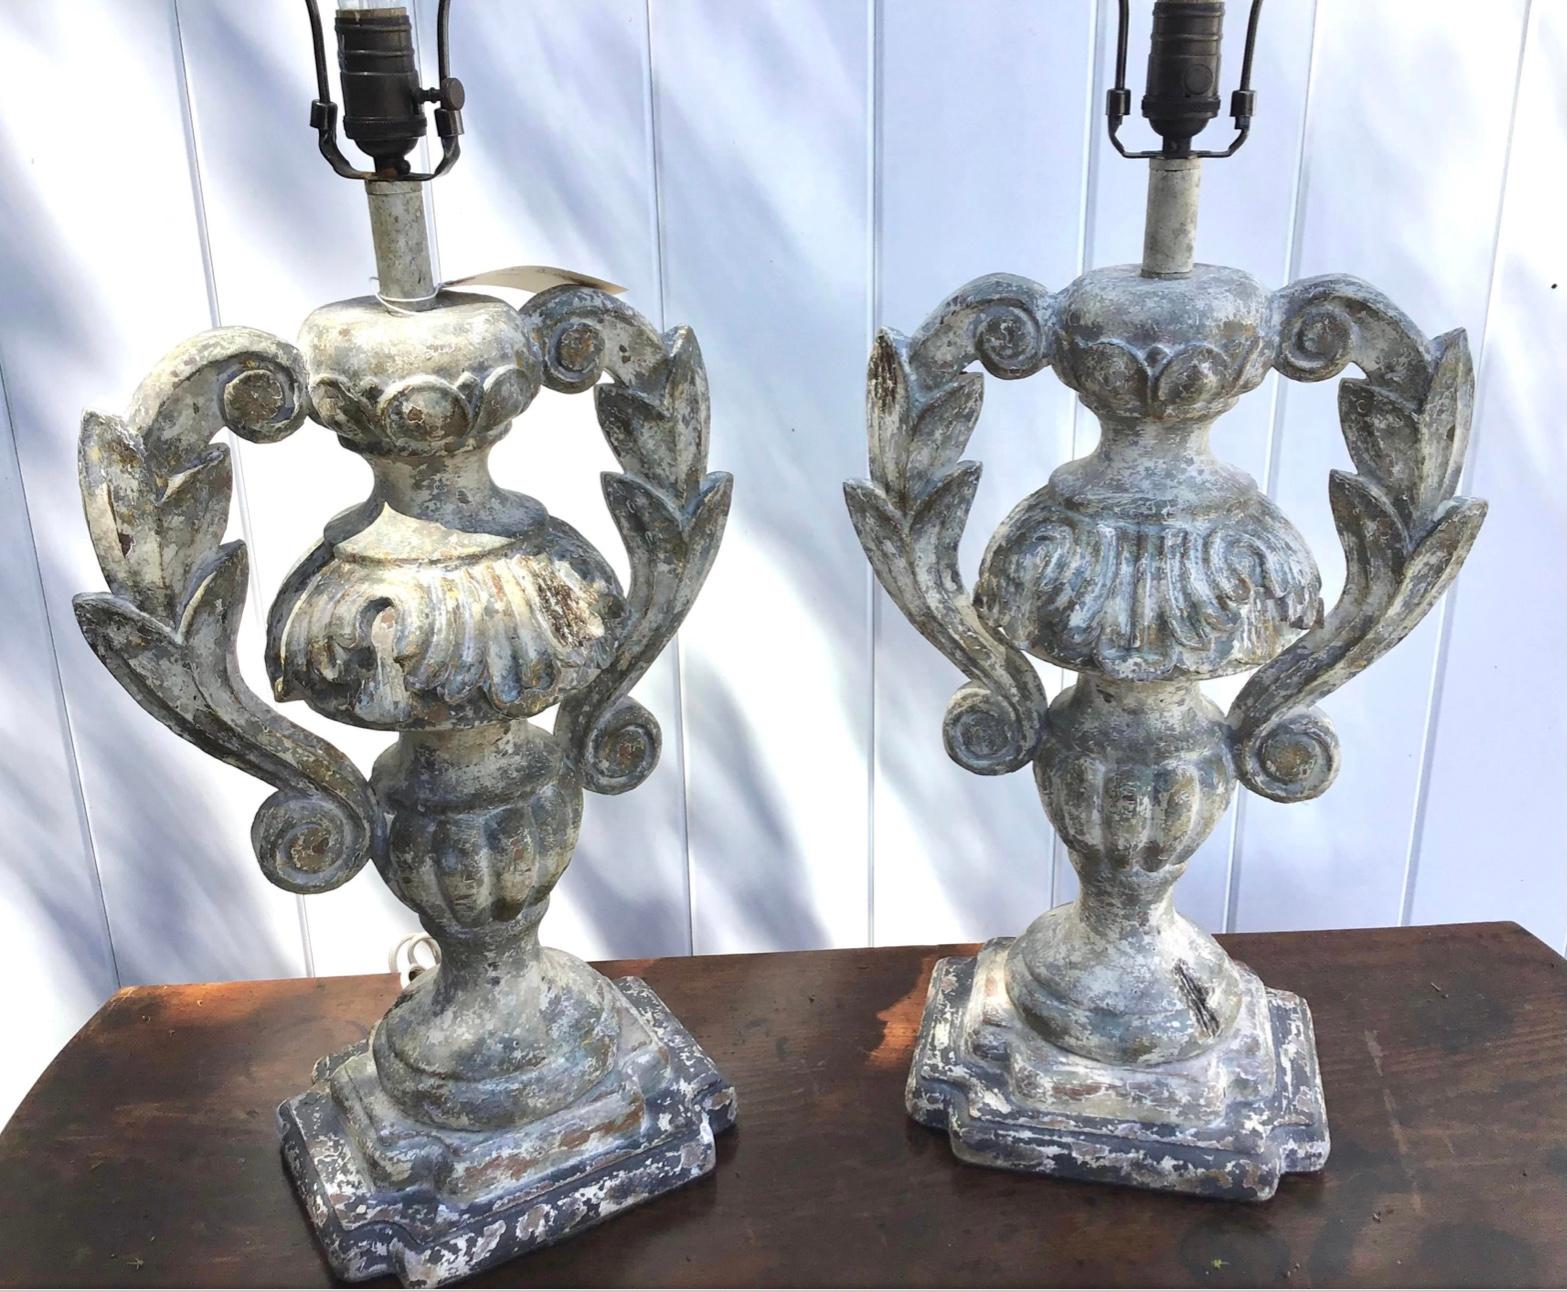 Lampes de table italiennes à urne en bois sculpté et vieilli. Cette merveilleuse paire de lampes est une véritable paire de designers, sculptée à la main et finie dans un aspect peint vieilli. Il s'agit d'un exemple exquis avec une forme d'urne